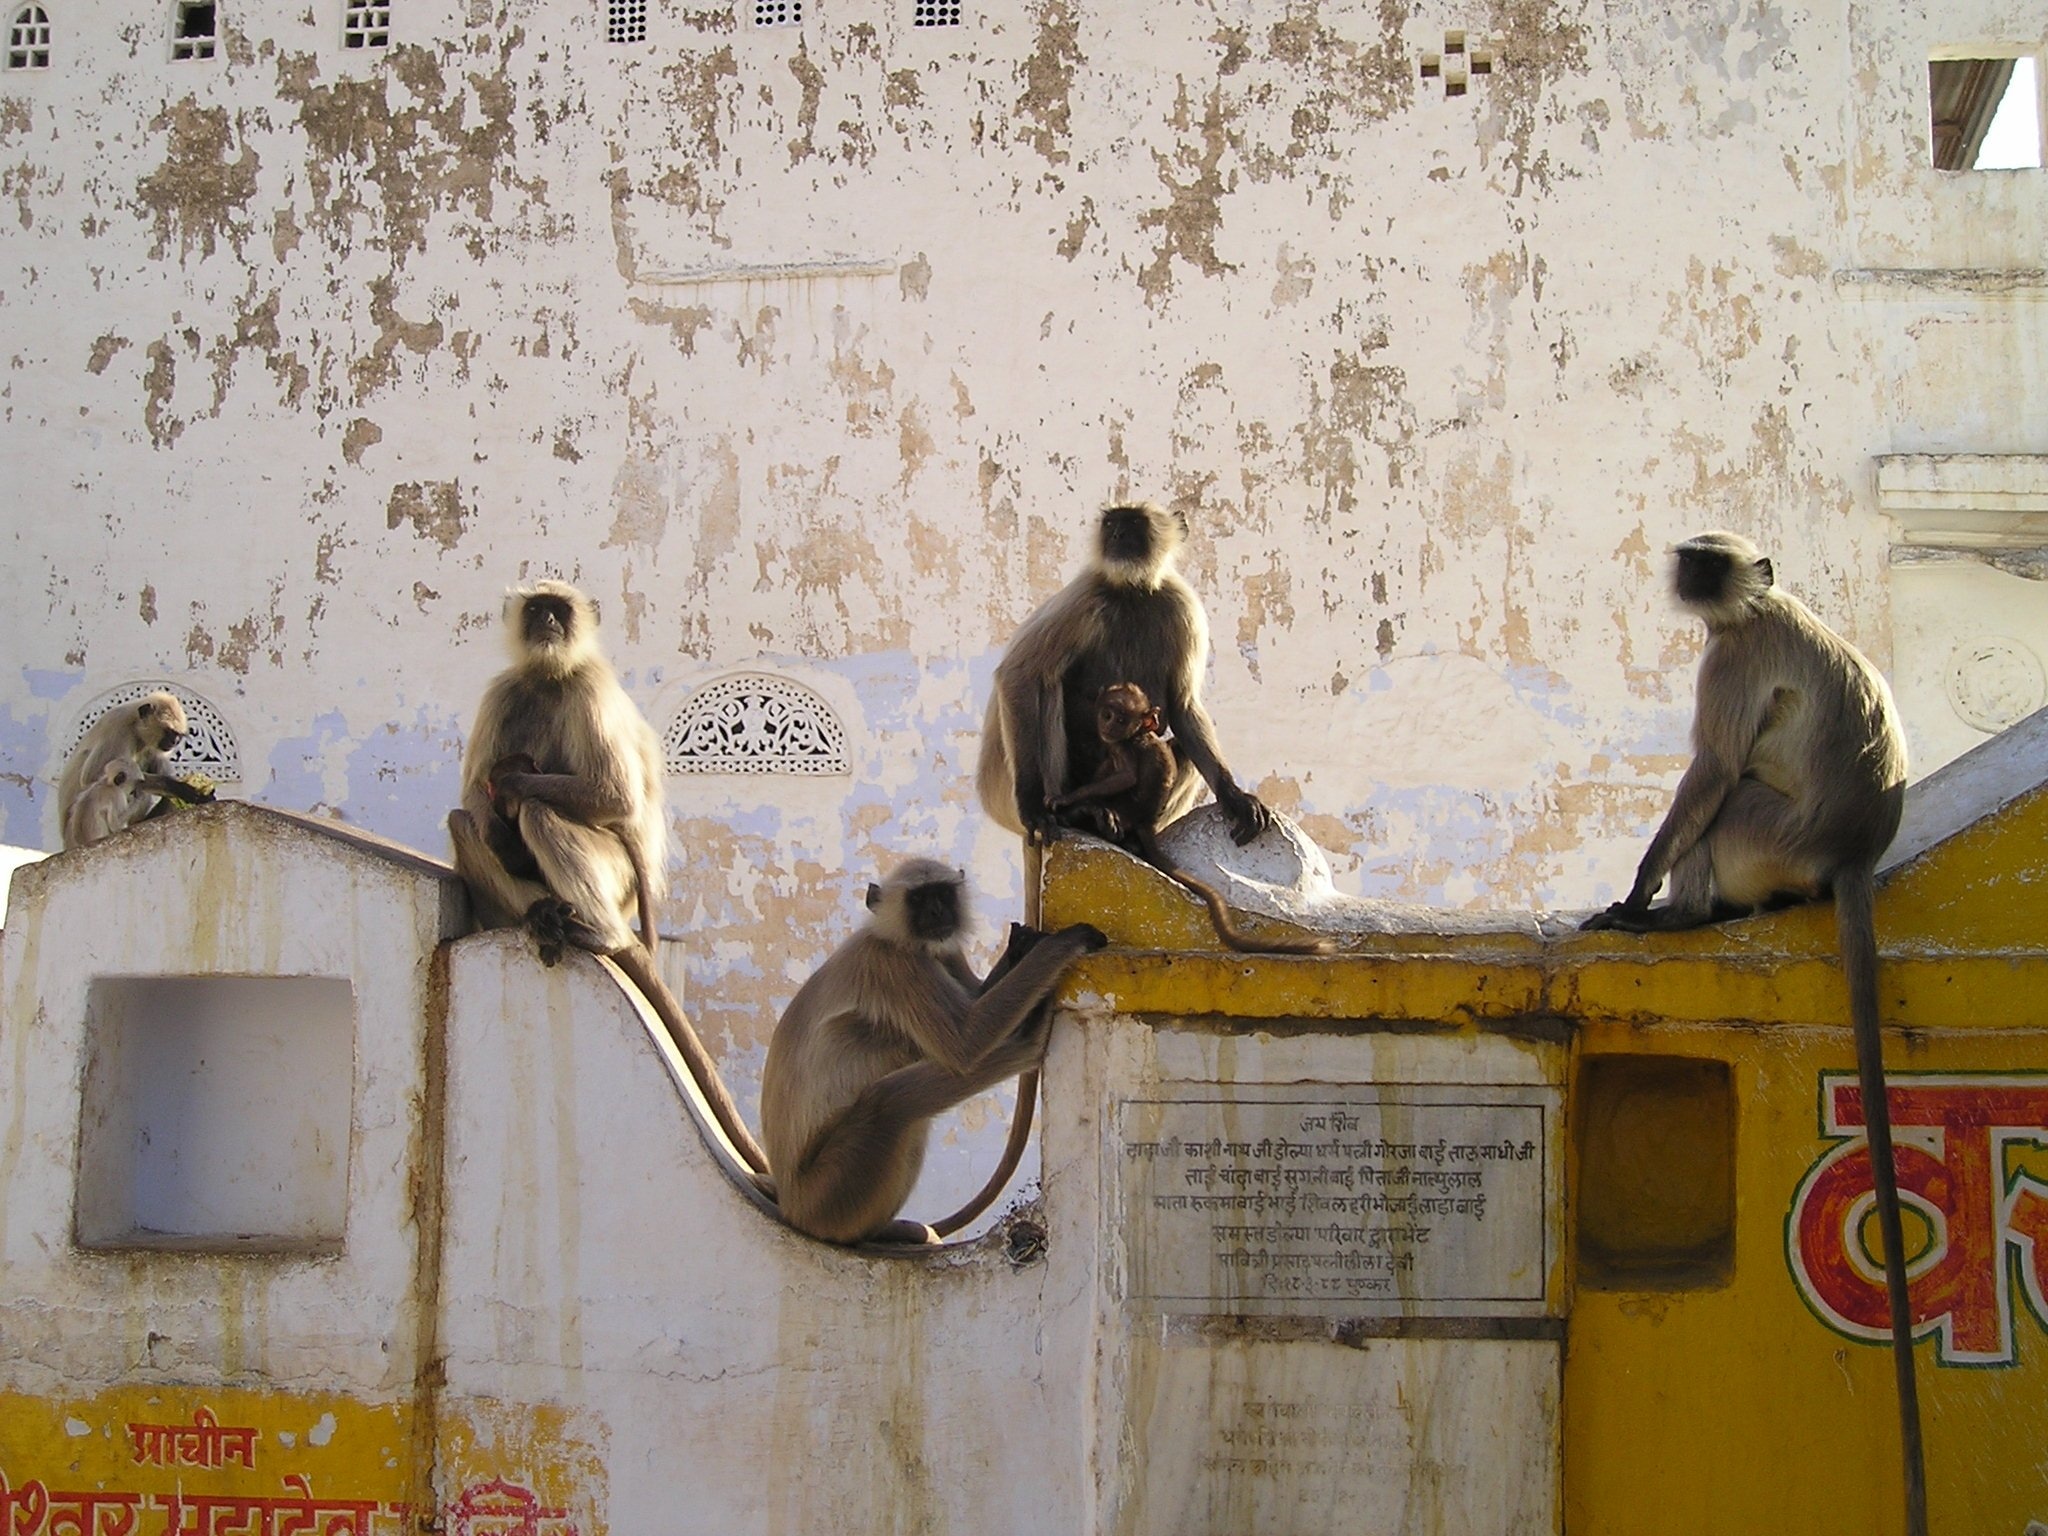 5 grey monkeys